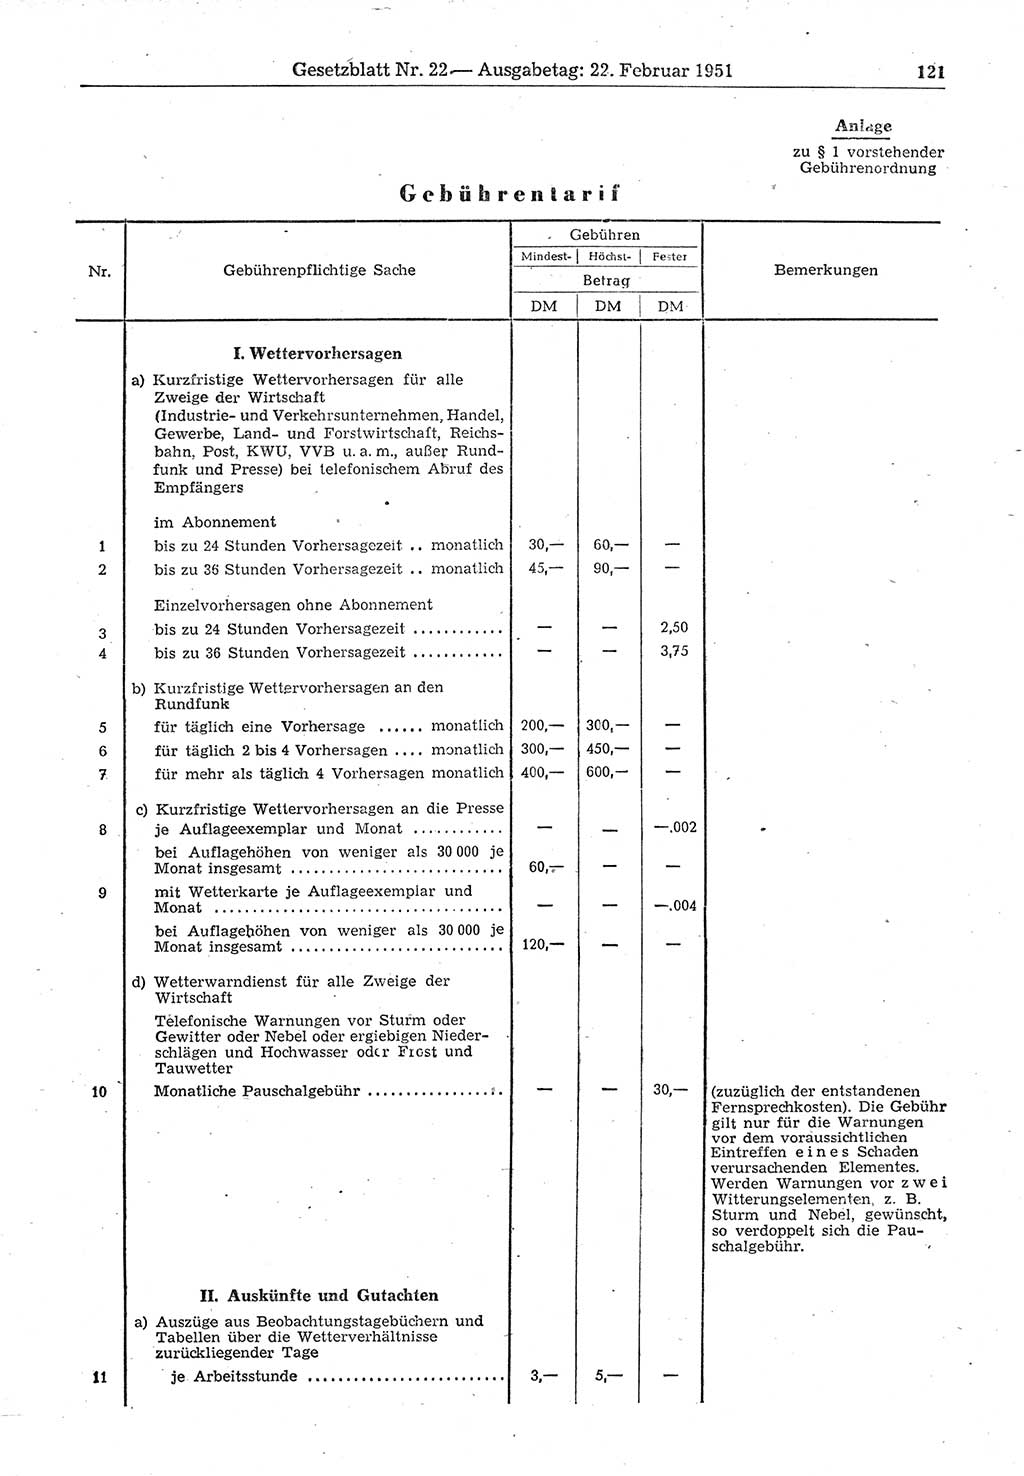 Gesetzblatt (GBl.) der Deutschen Demokratischen Republik (DDR) 1951, Seite 121 (GBl. DDR 1951, S. 121)